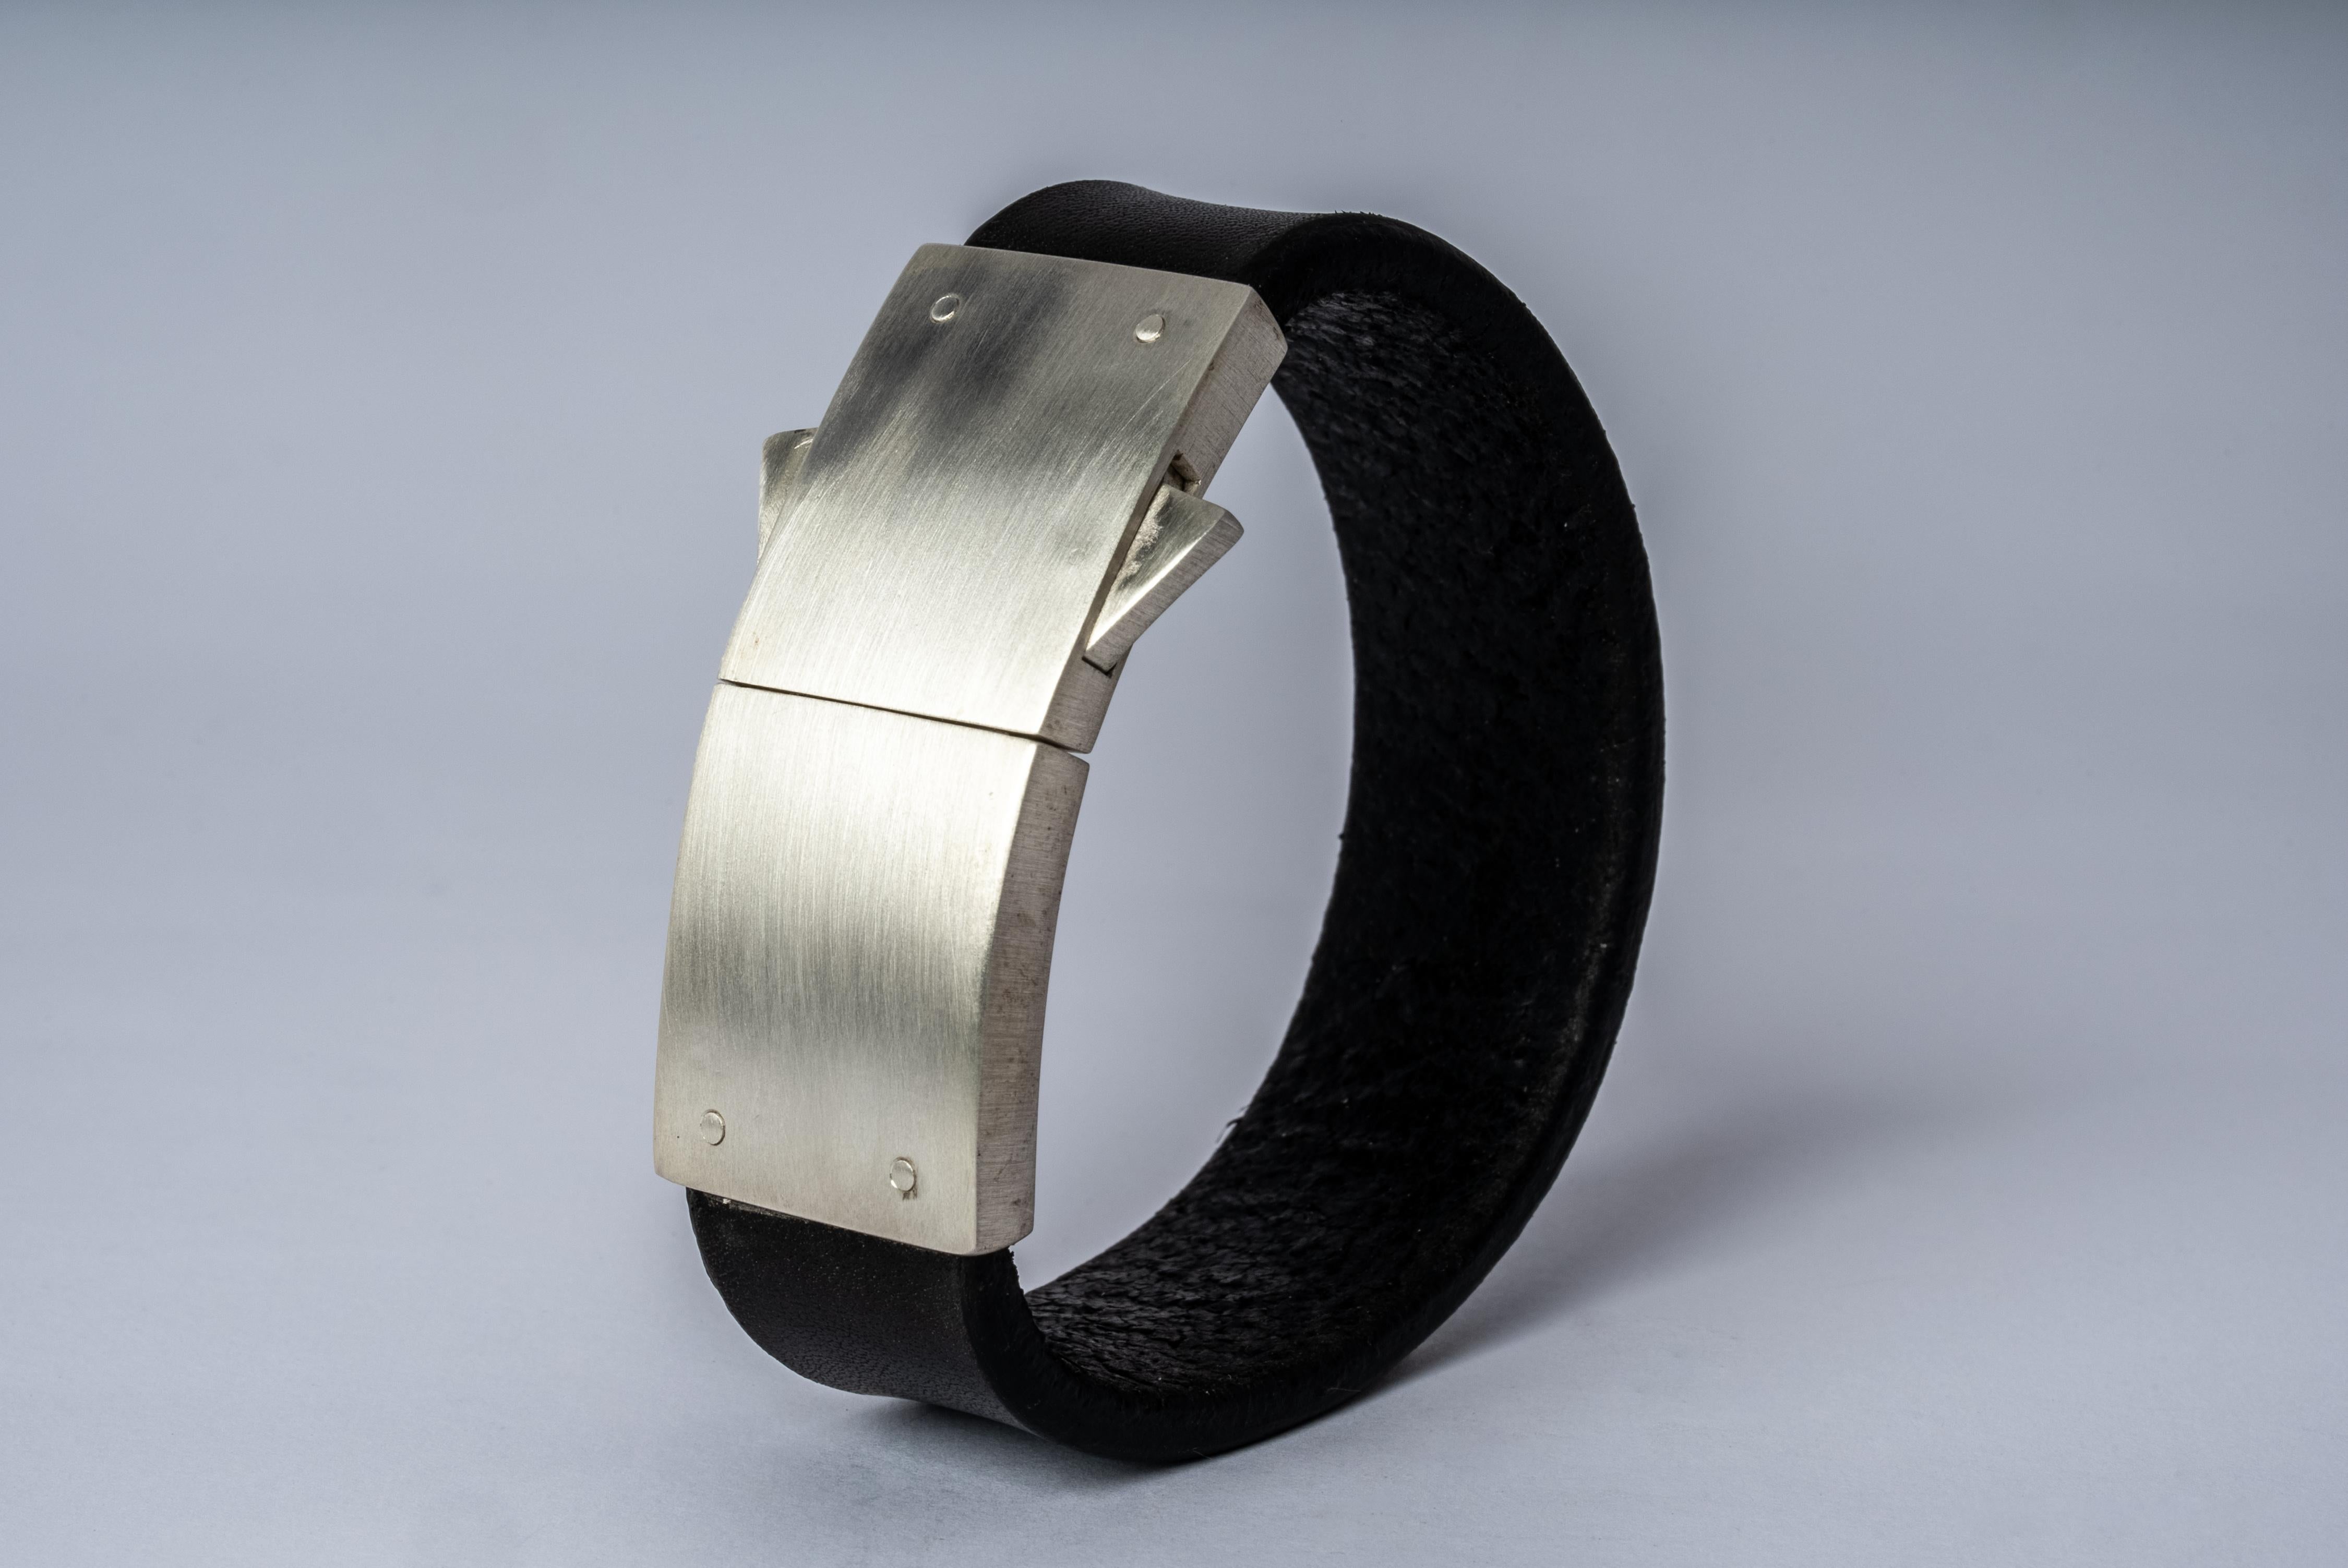 Bracelet en cuir de buffle noir et argent sterling mat. Argent sterling poncé au grain 320.
Dimension de la largeur du bracelet : 25 mm.